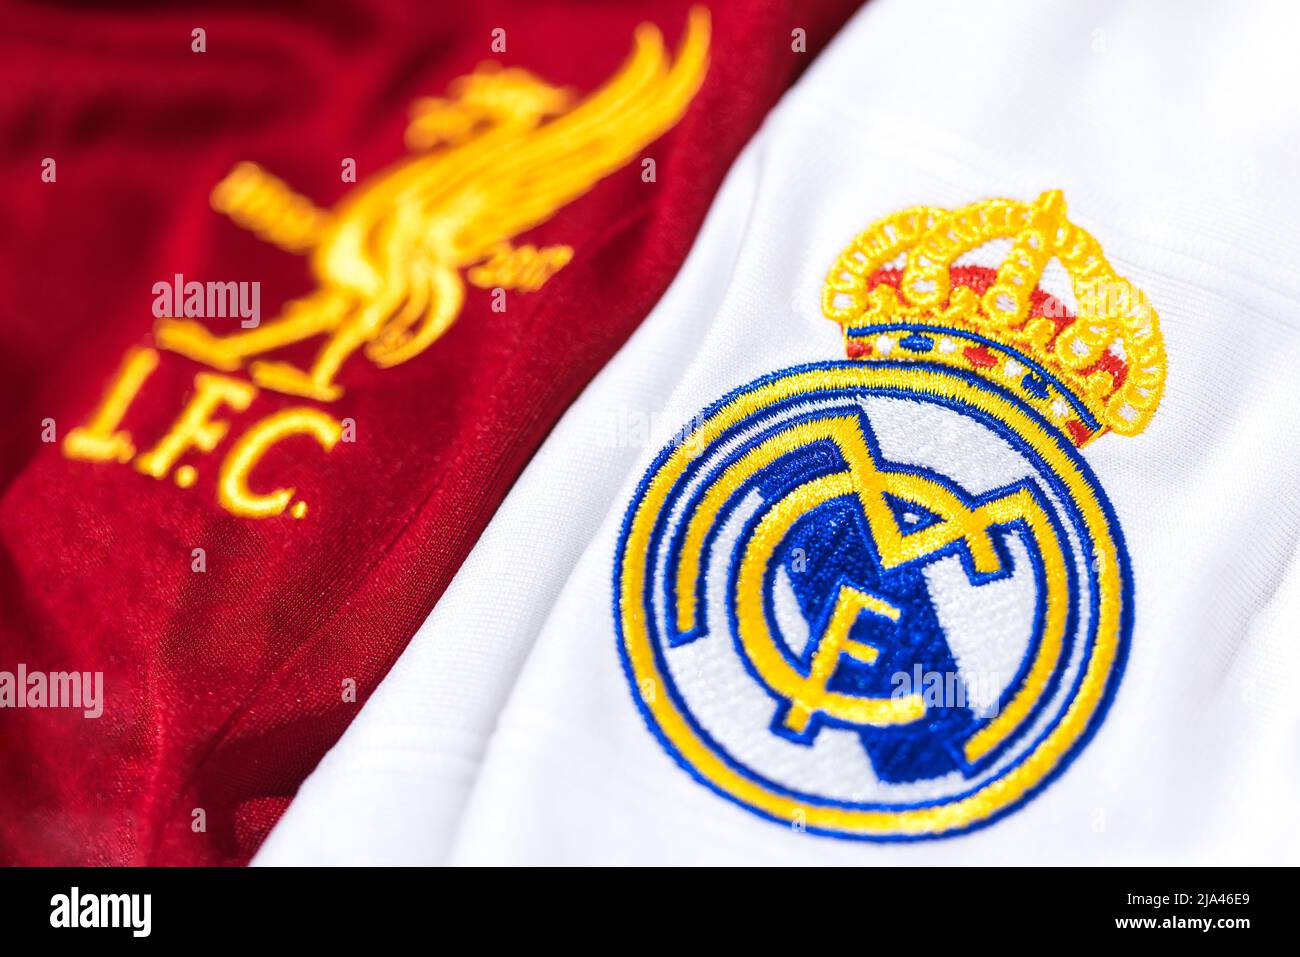 Scudo sfocato sulla maglia del Liverpool Club de Football accanto allo  scudo focalizzato del Real Madrid sulla sua camicia. UEFA Champions League  Final Concept o Foto stock - Alamy